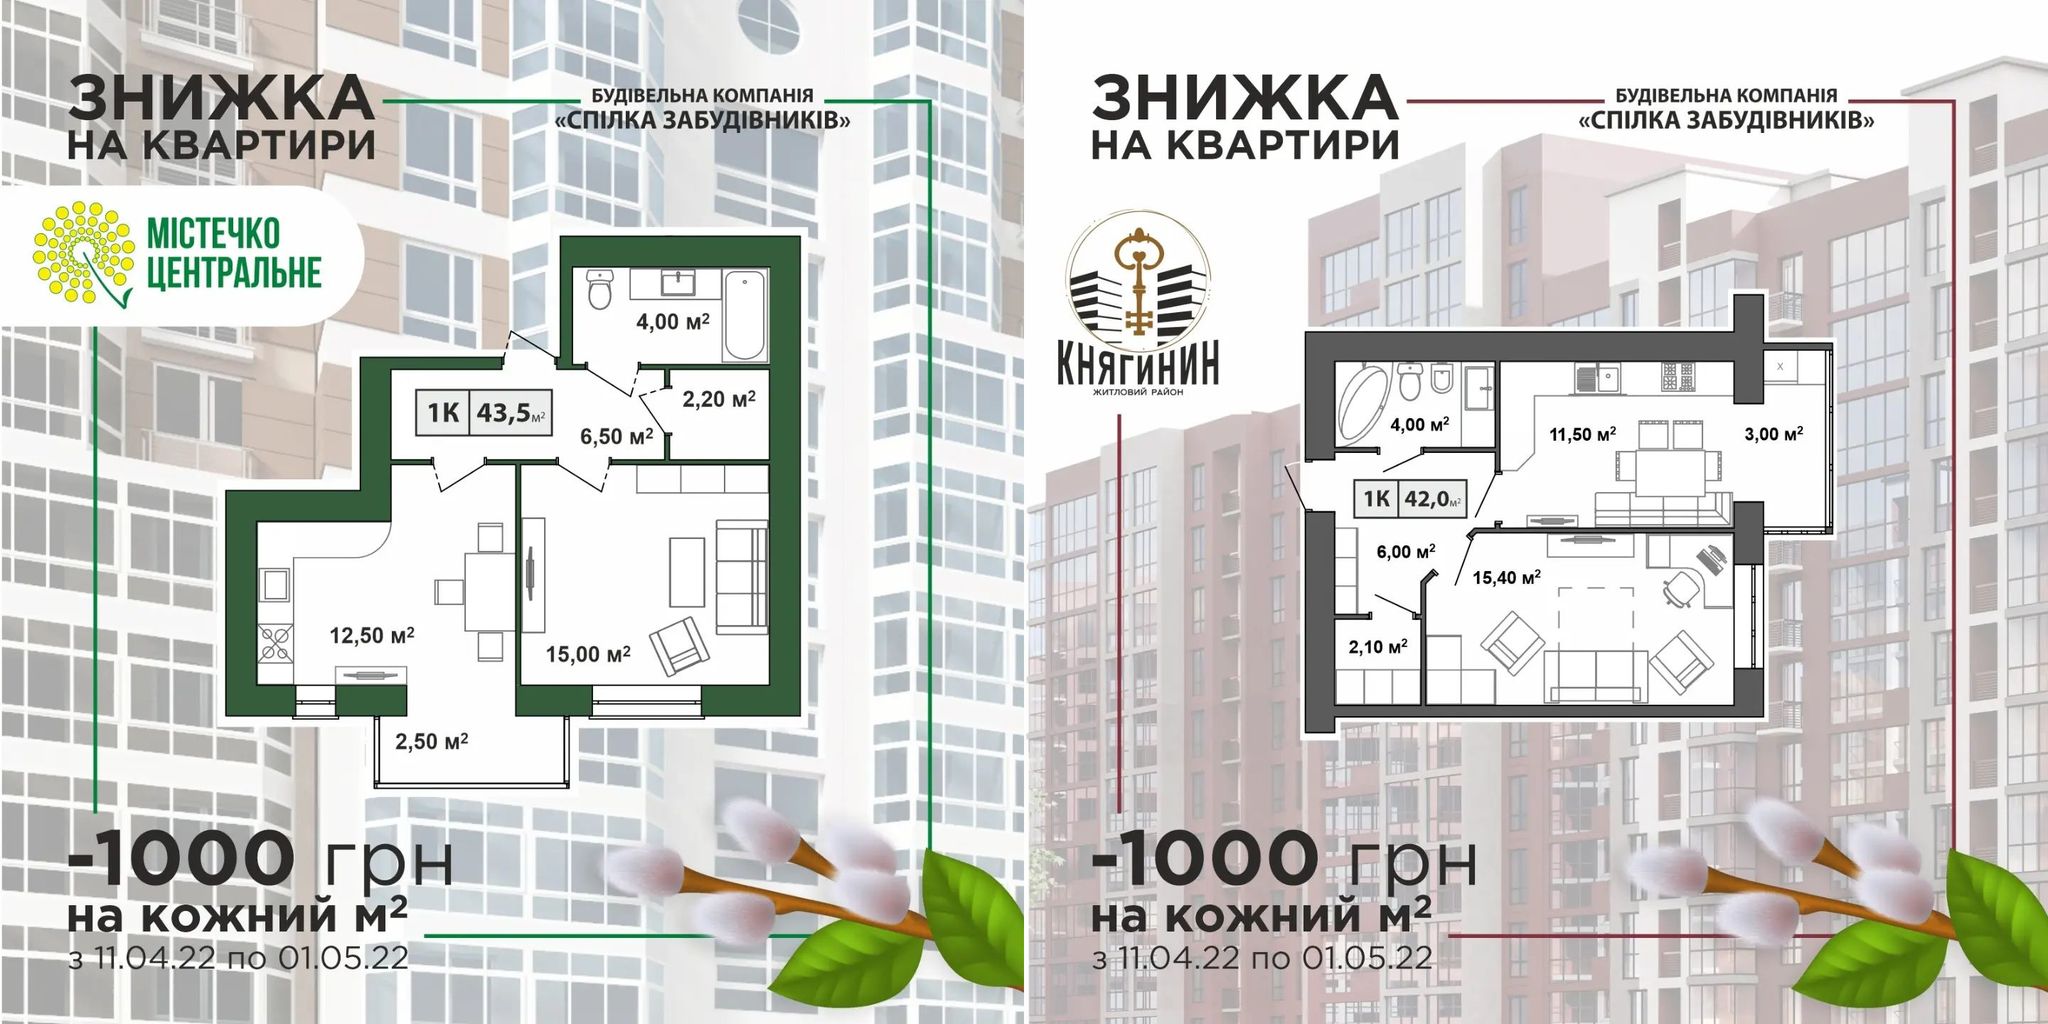 Знижки до 100 000 грн на квартири від “Спілки забудівників”